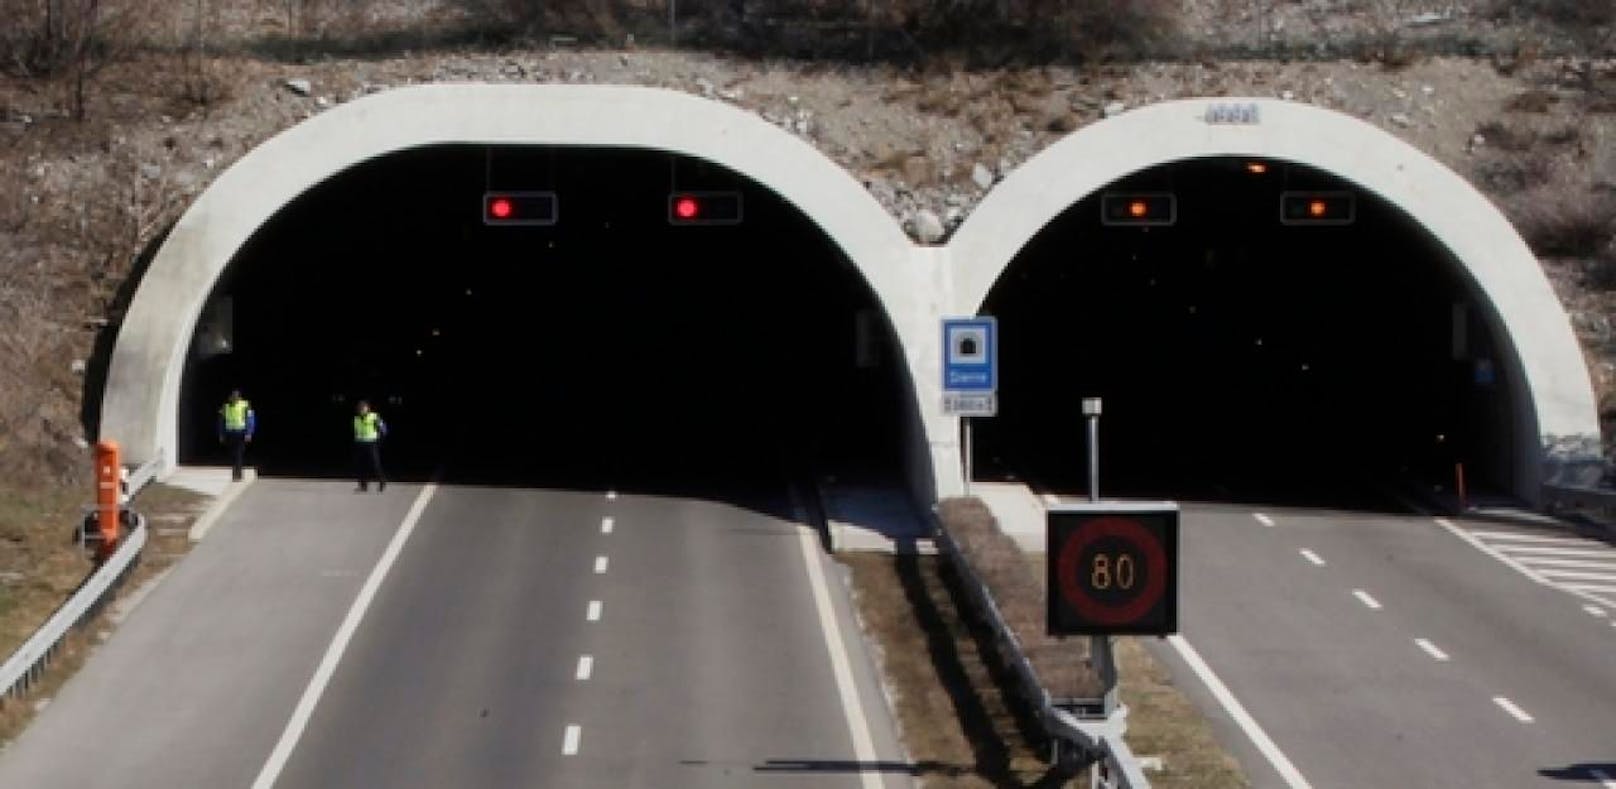 61-Jährige prallt mit Pkw gegen Tunnel und stirbt